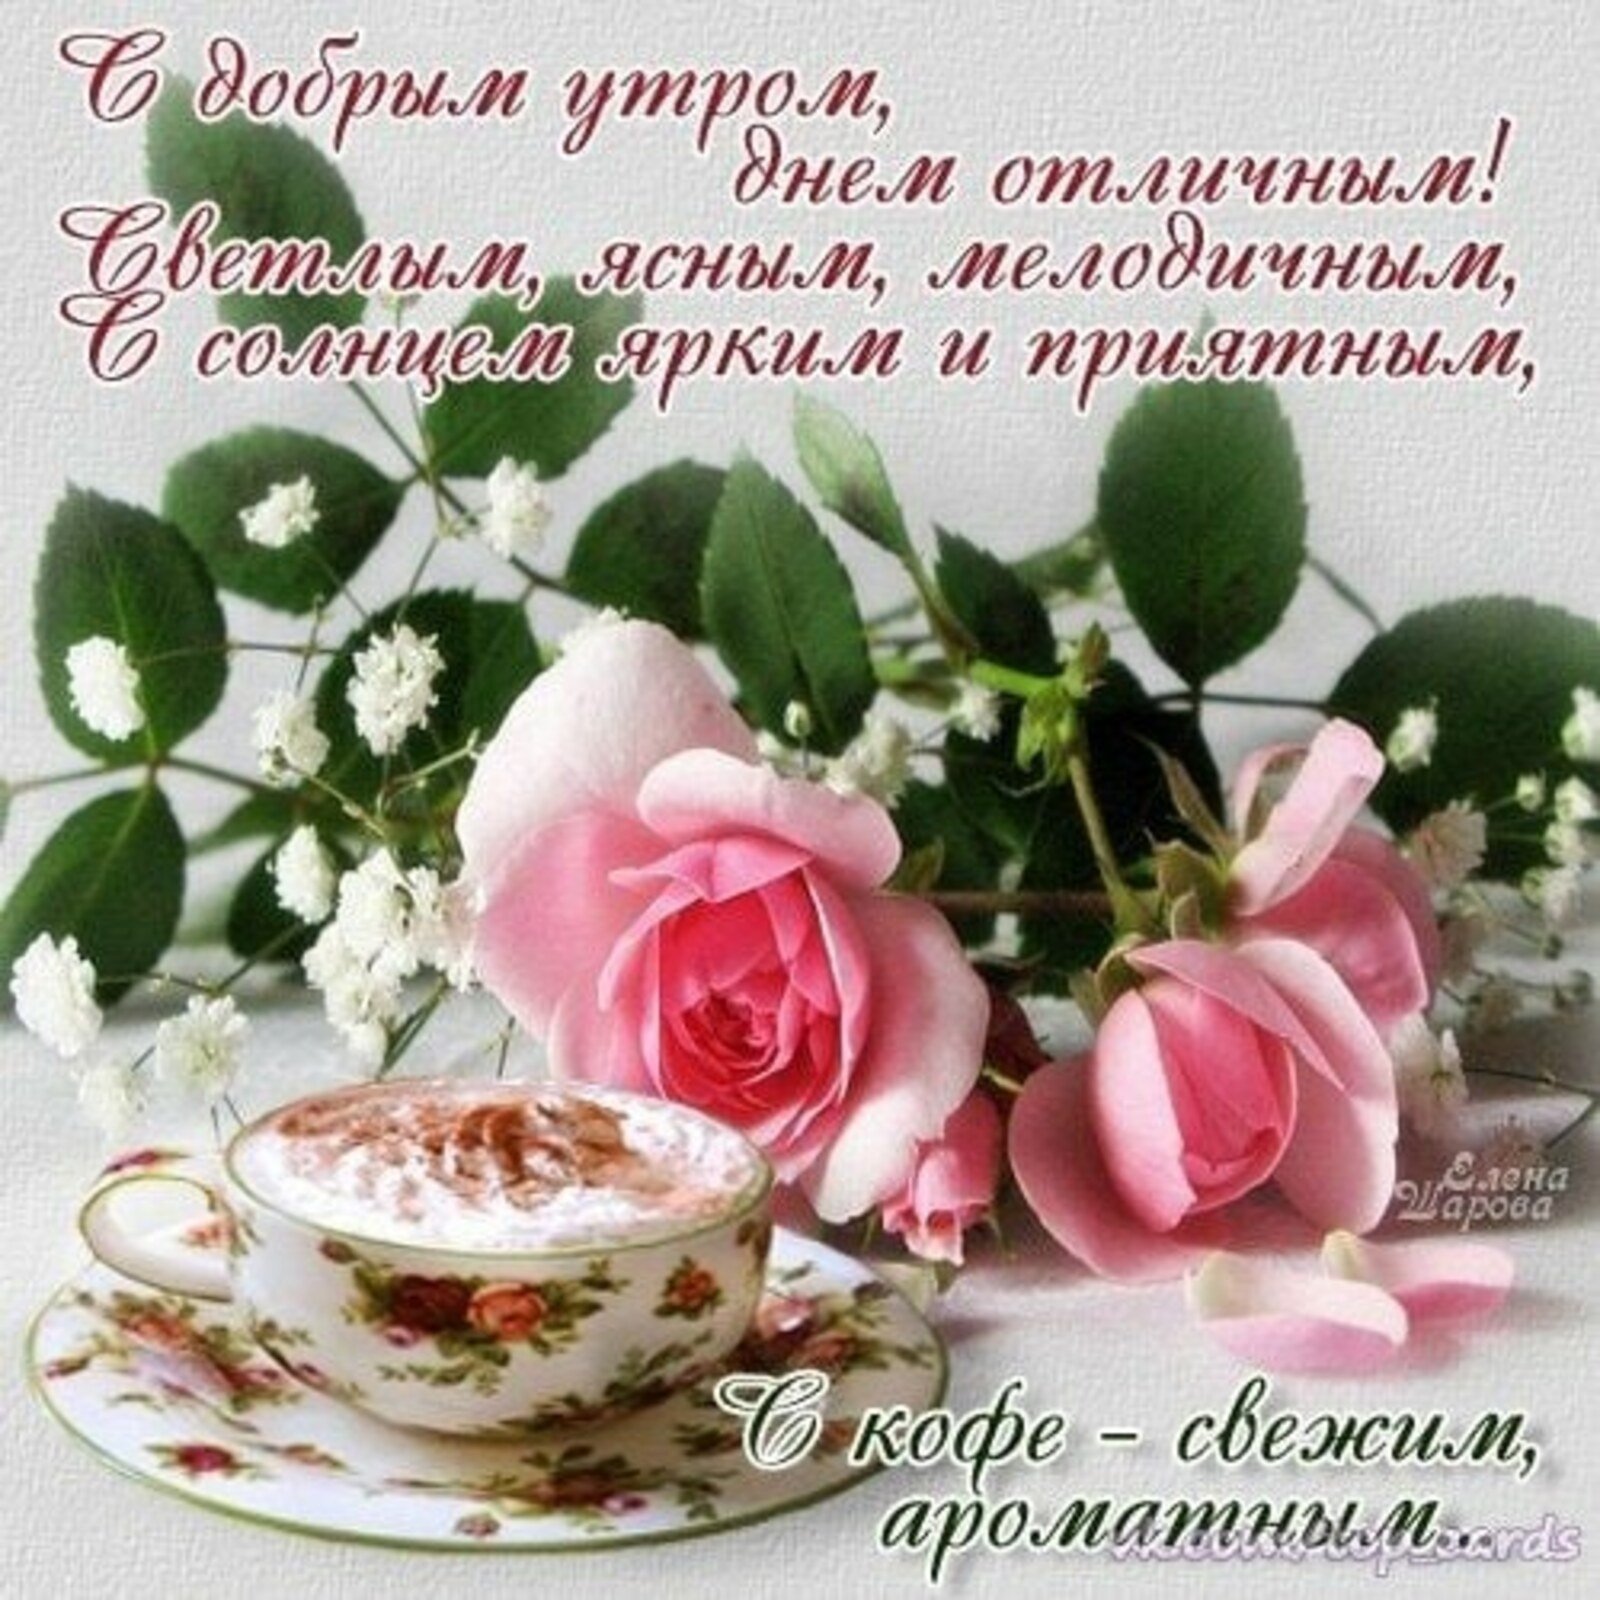 Доброе утро картинки красивые женщине с пожеланиями. Утренние цветы с пожеланиями. Открытки с добрым утром и добрыми пожеланиями. С добрым утром цветы пожелания. Пожелания доброго утра и доброго дня.